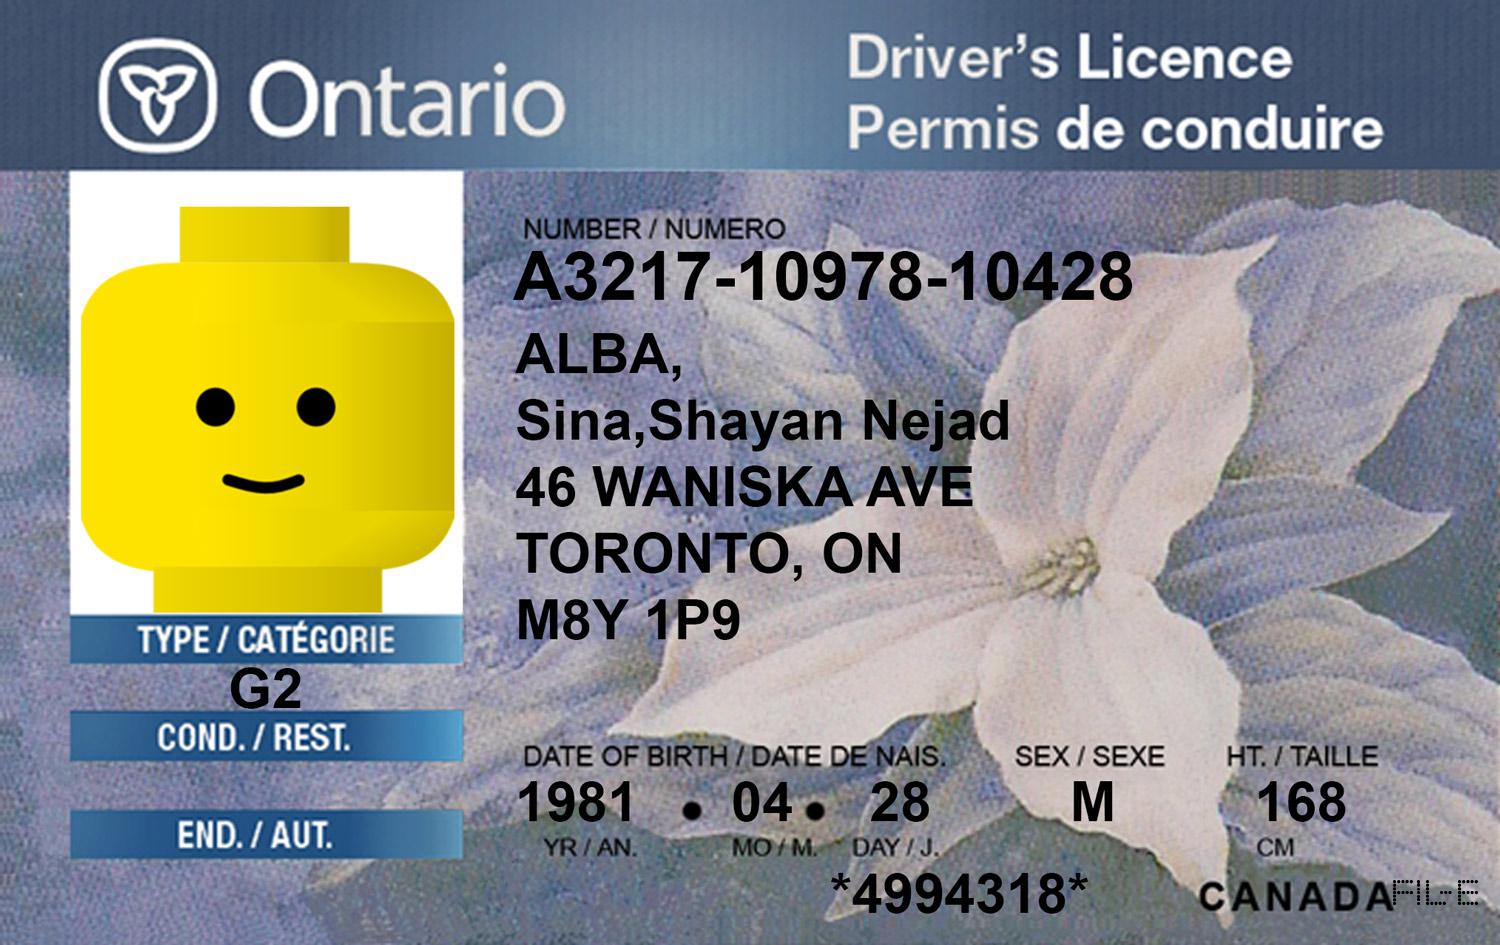 دانلود فایل لایه باز گواهینامه رانندگی انتاریو ، کانادا / Canada , Ontario Driver Licence